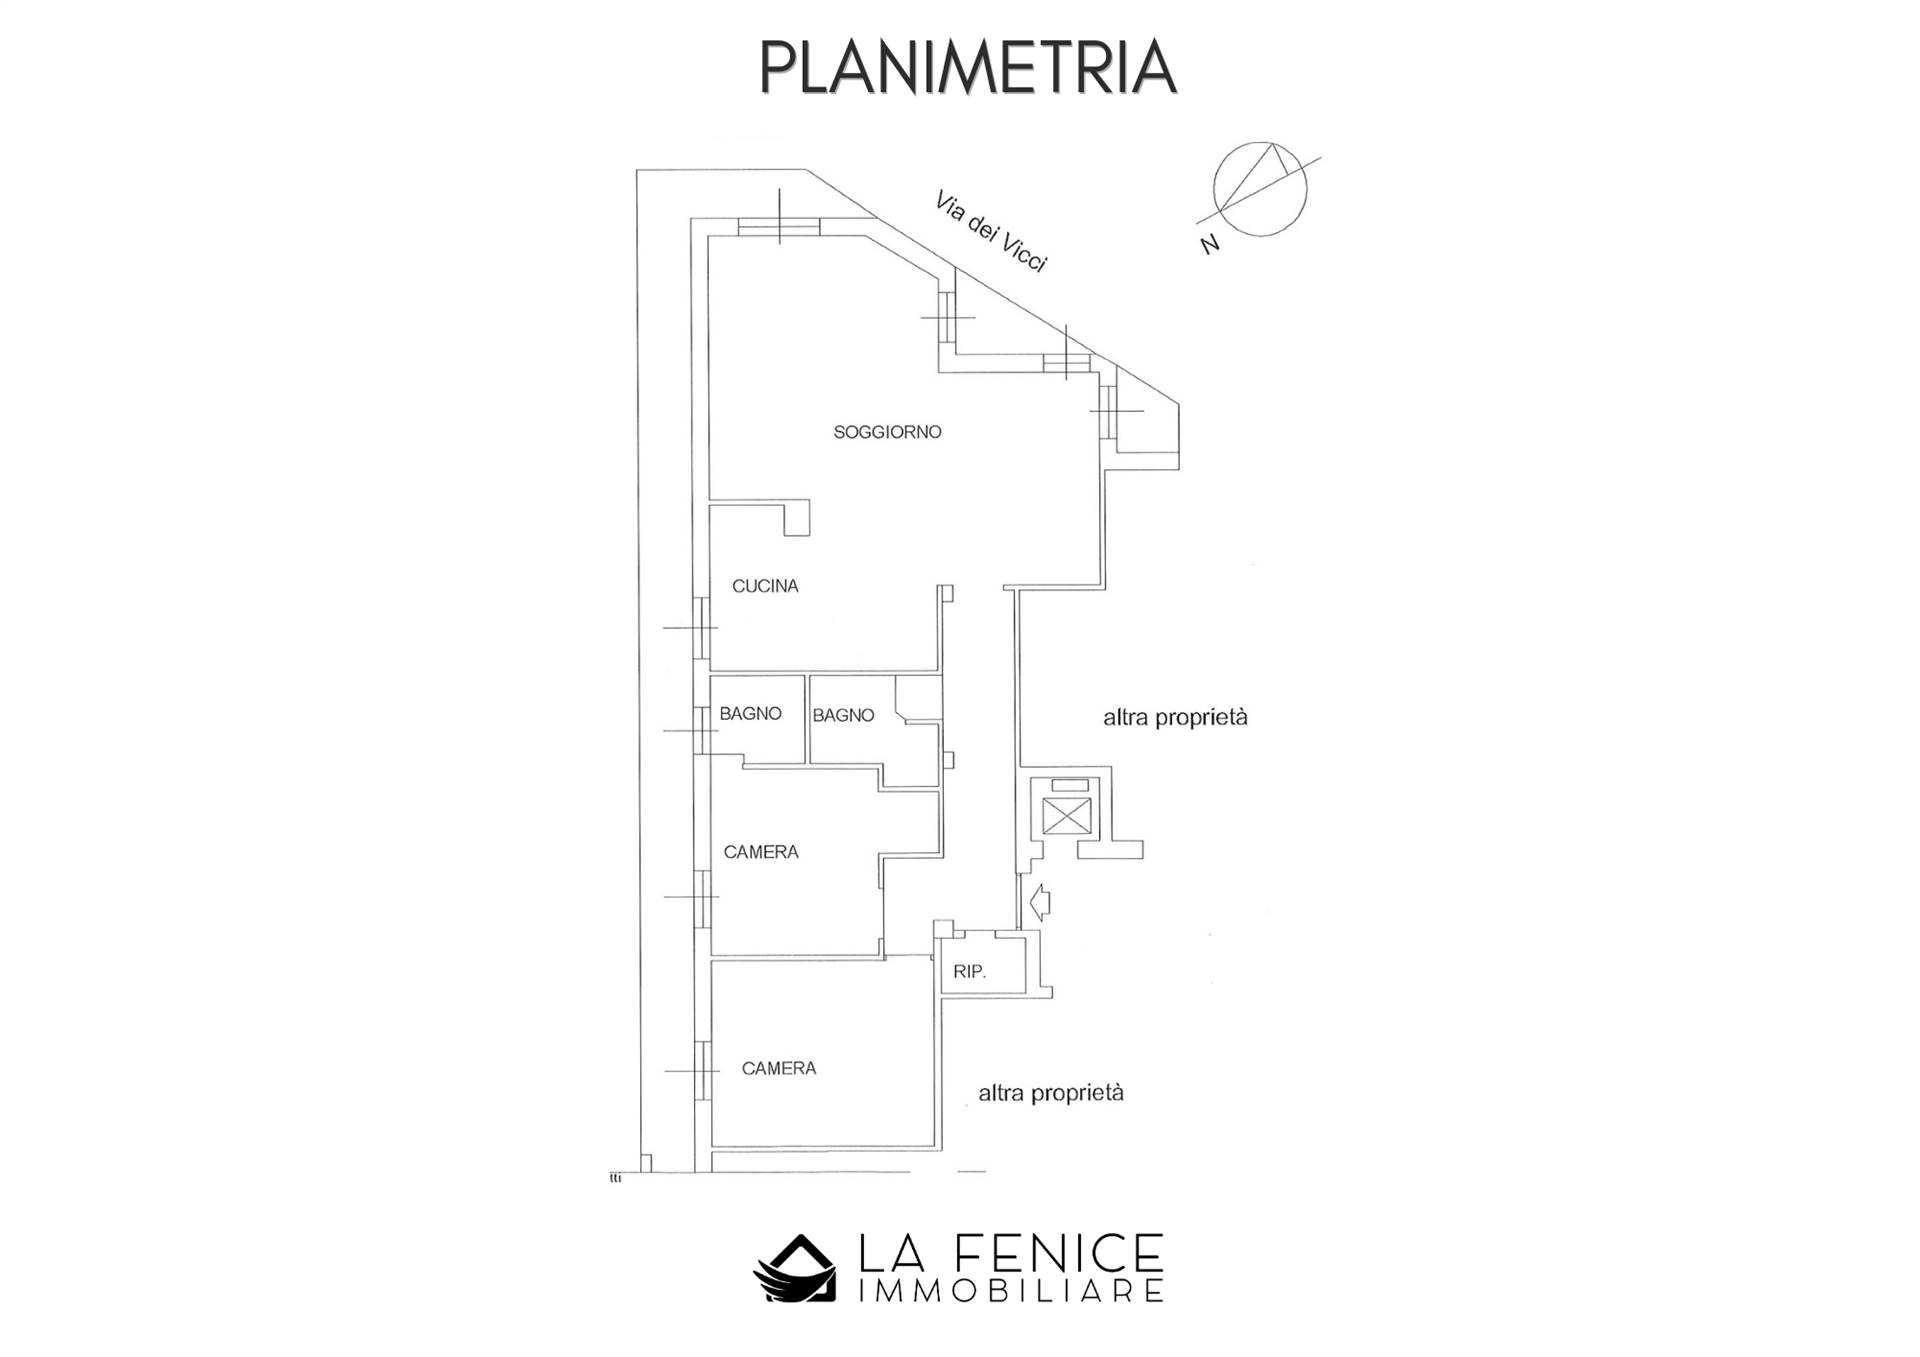 Appartamento a La spezia con 6 locali di 127 m2 - PLANIMETRIA